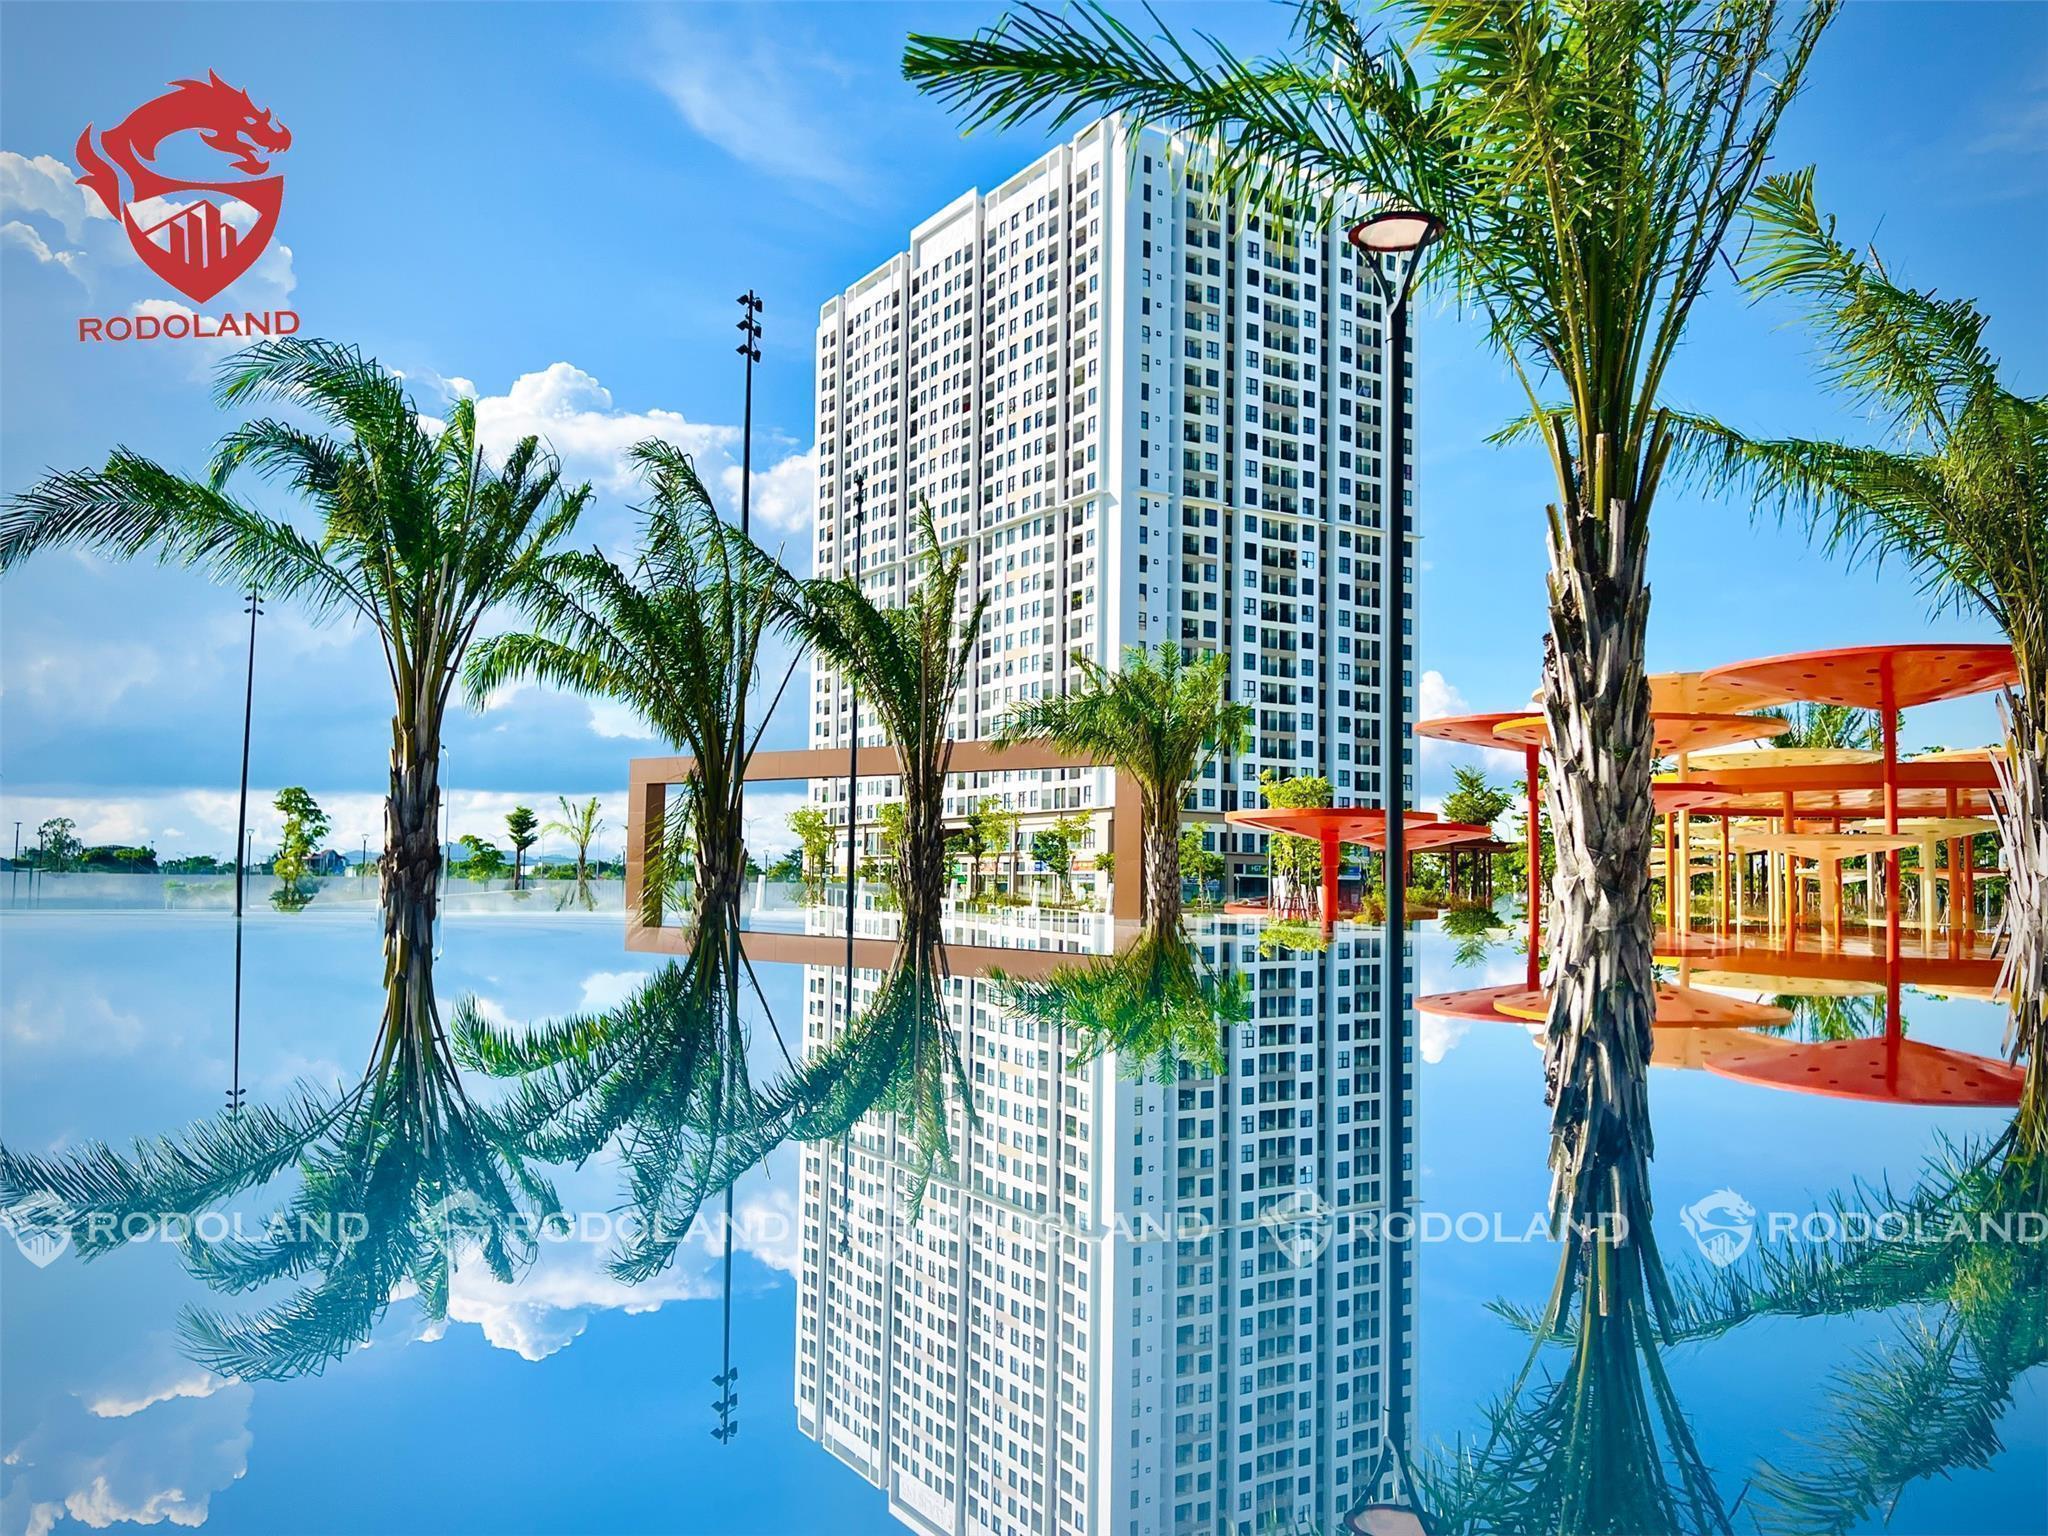 CHUYÊN FPT: Cần cho thuê căn hộ FPT Plaza Đà Nẵng - Lliên hệ BĐS Rồng Đỏ 0905.31.89.88 2